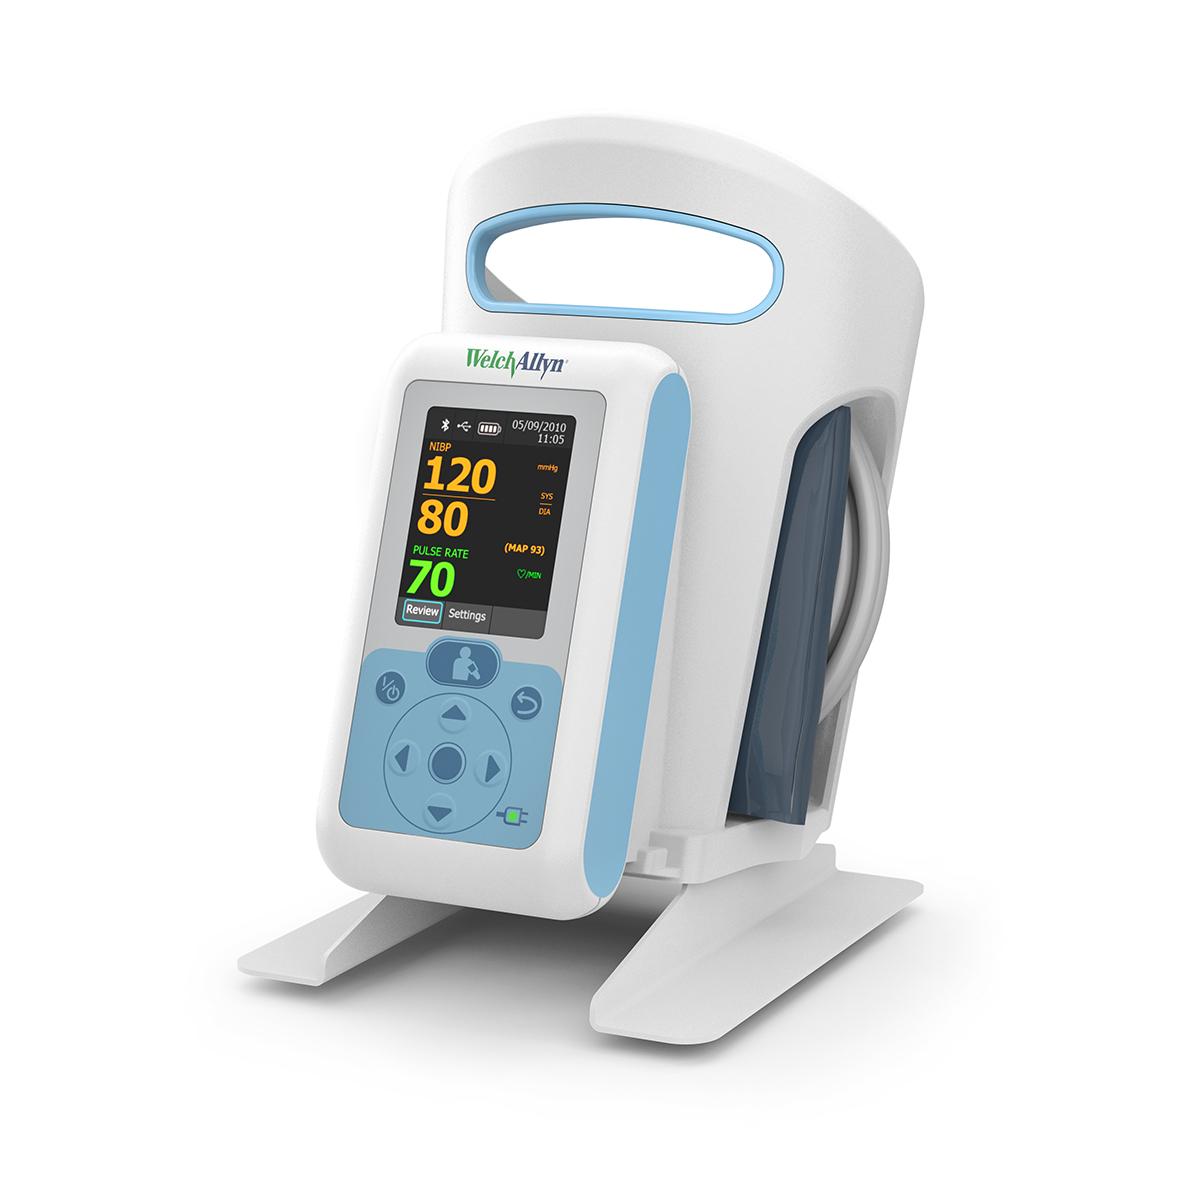 Connex® ProBP™ 3400 Digitales Blutdruckmessgerät, 3/4-Ansicht von der rechten Seite des Produkts, mit Tischmontageadapter mit Korb